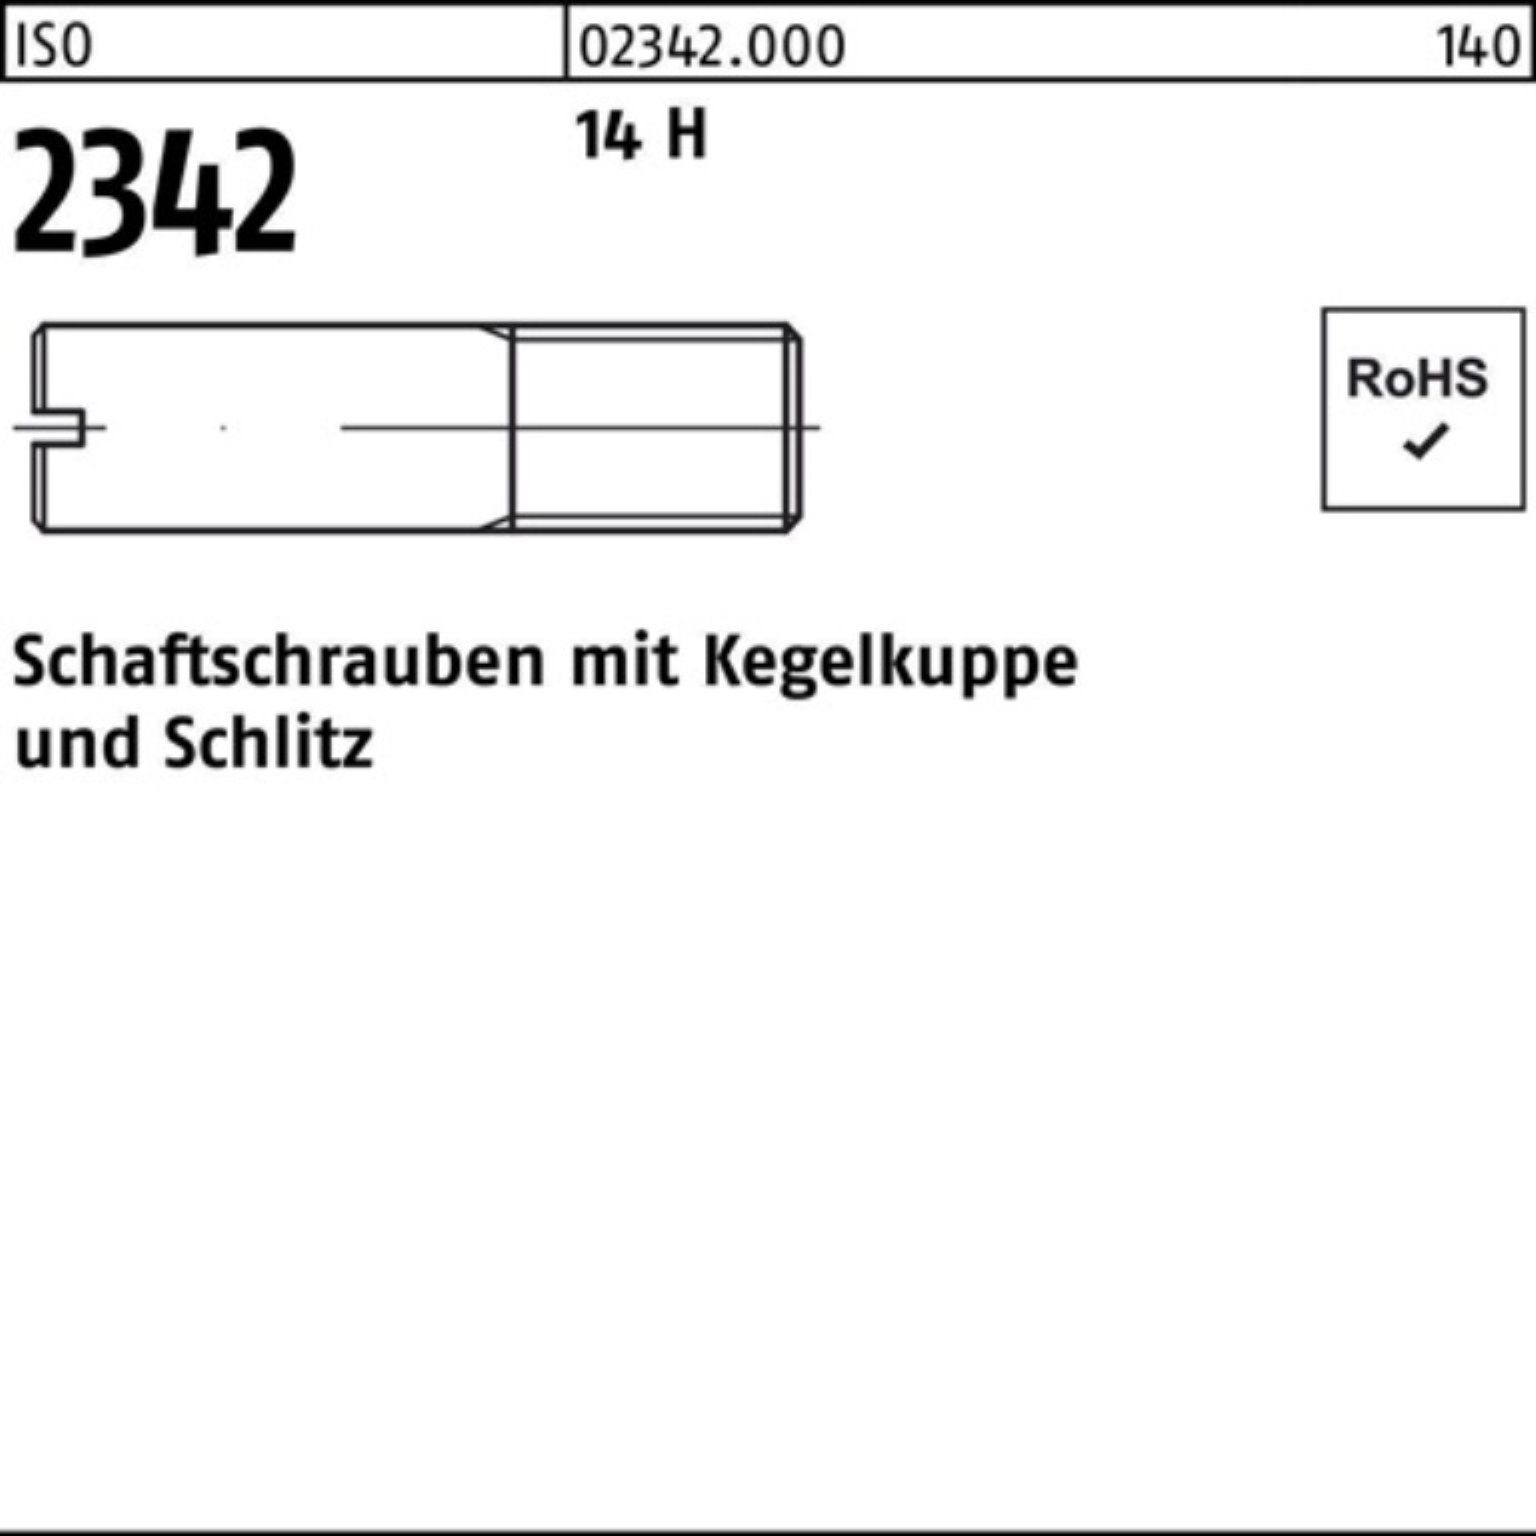 Reyher Schraube 100er Pack Schaftschraube ISO 2342 Kegelkuppe/Schlitz M10x 35 14 H 50